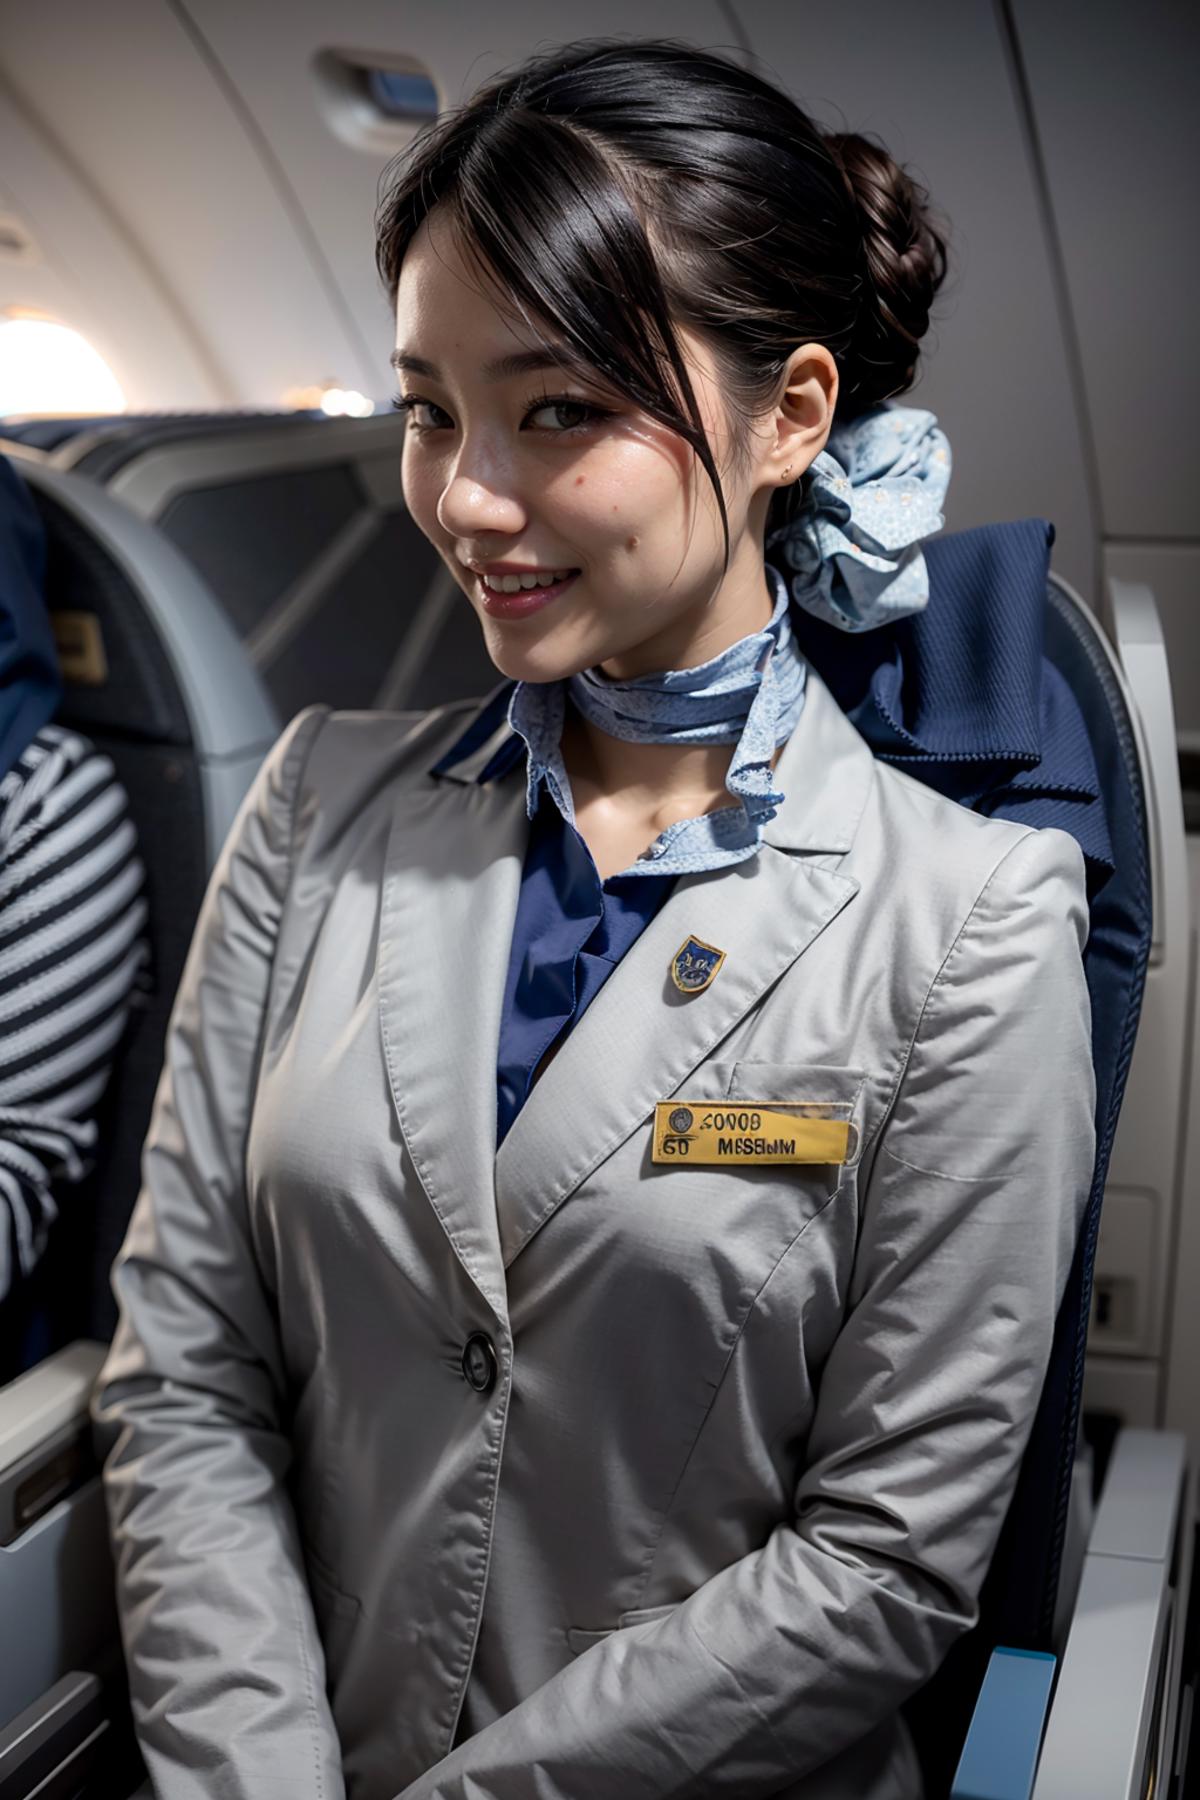 ANA Stewardess Uniform image by feetie